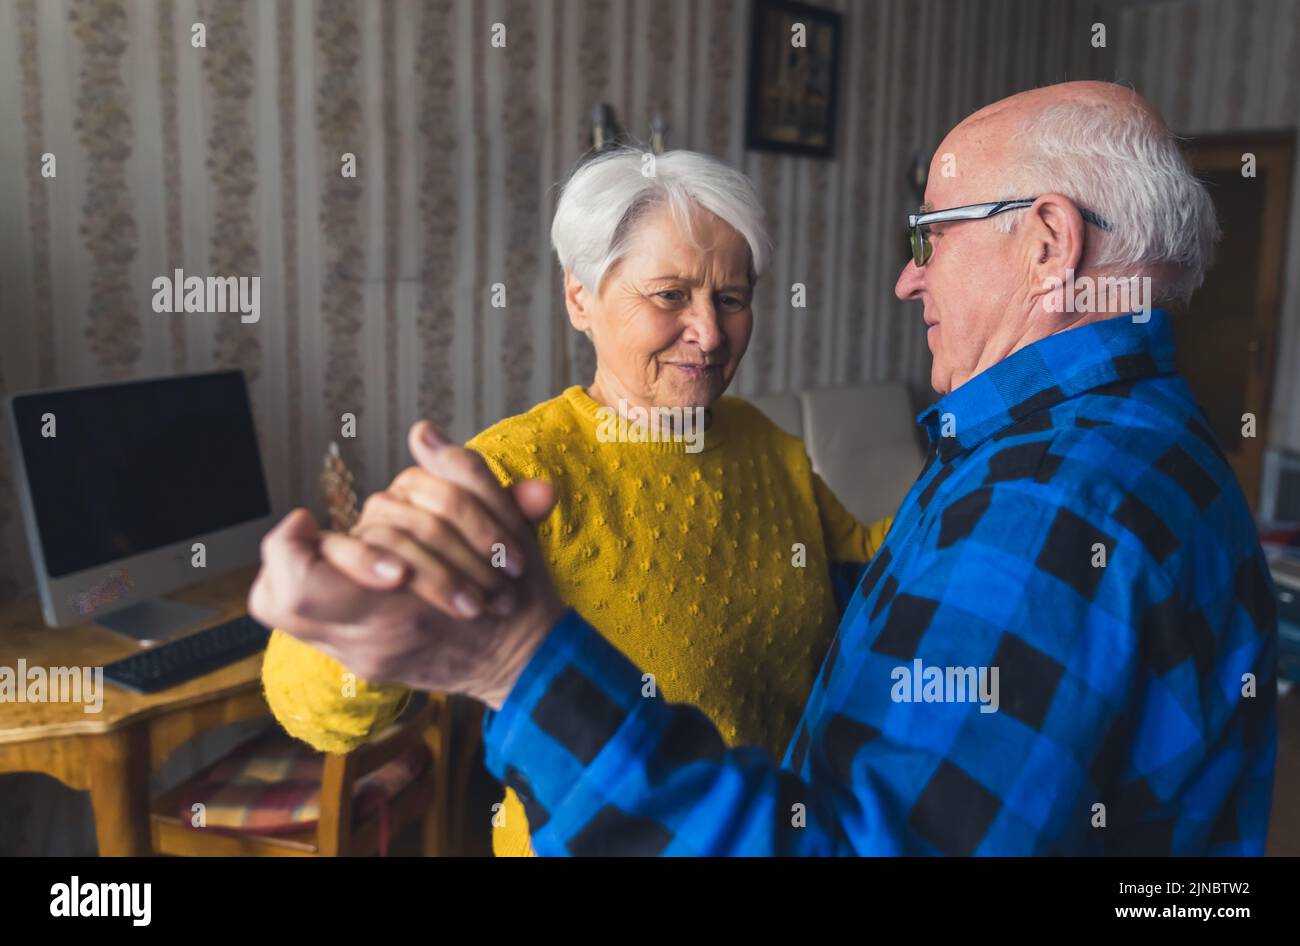 Felice donna anziana caucasica che balla insieme con suo marito nel soggiorno della propria casa. Foto di alta qualità Foto Stock